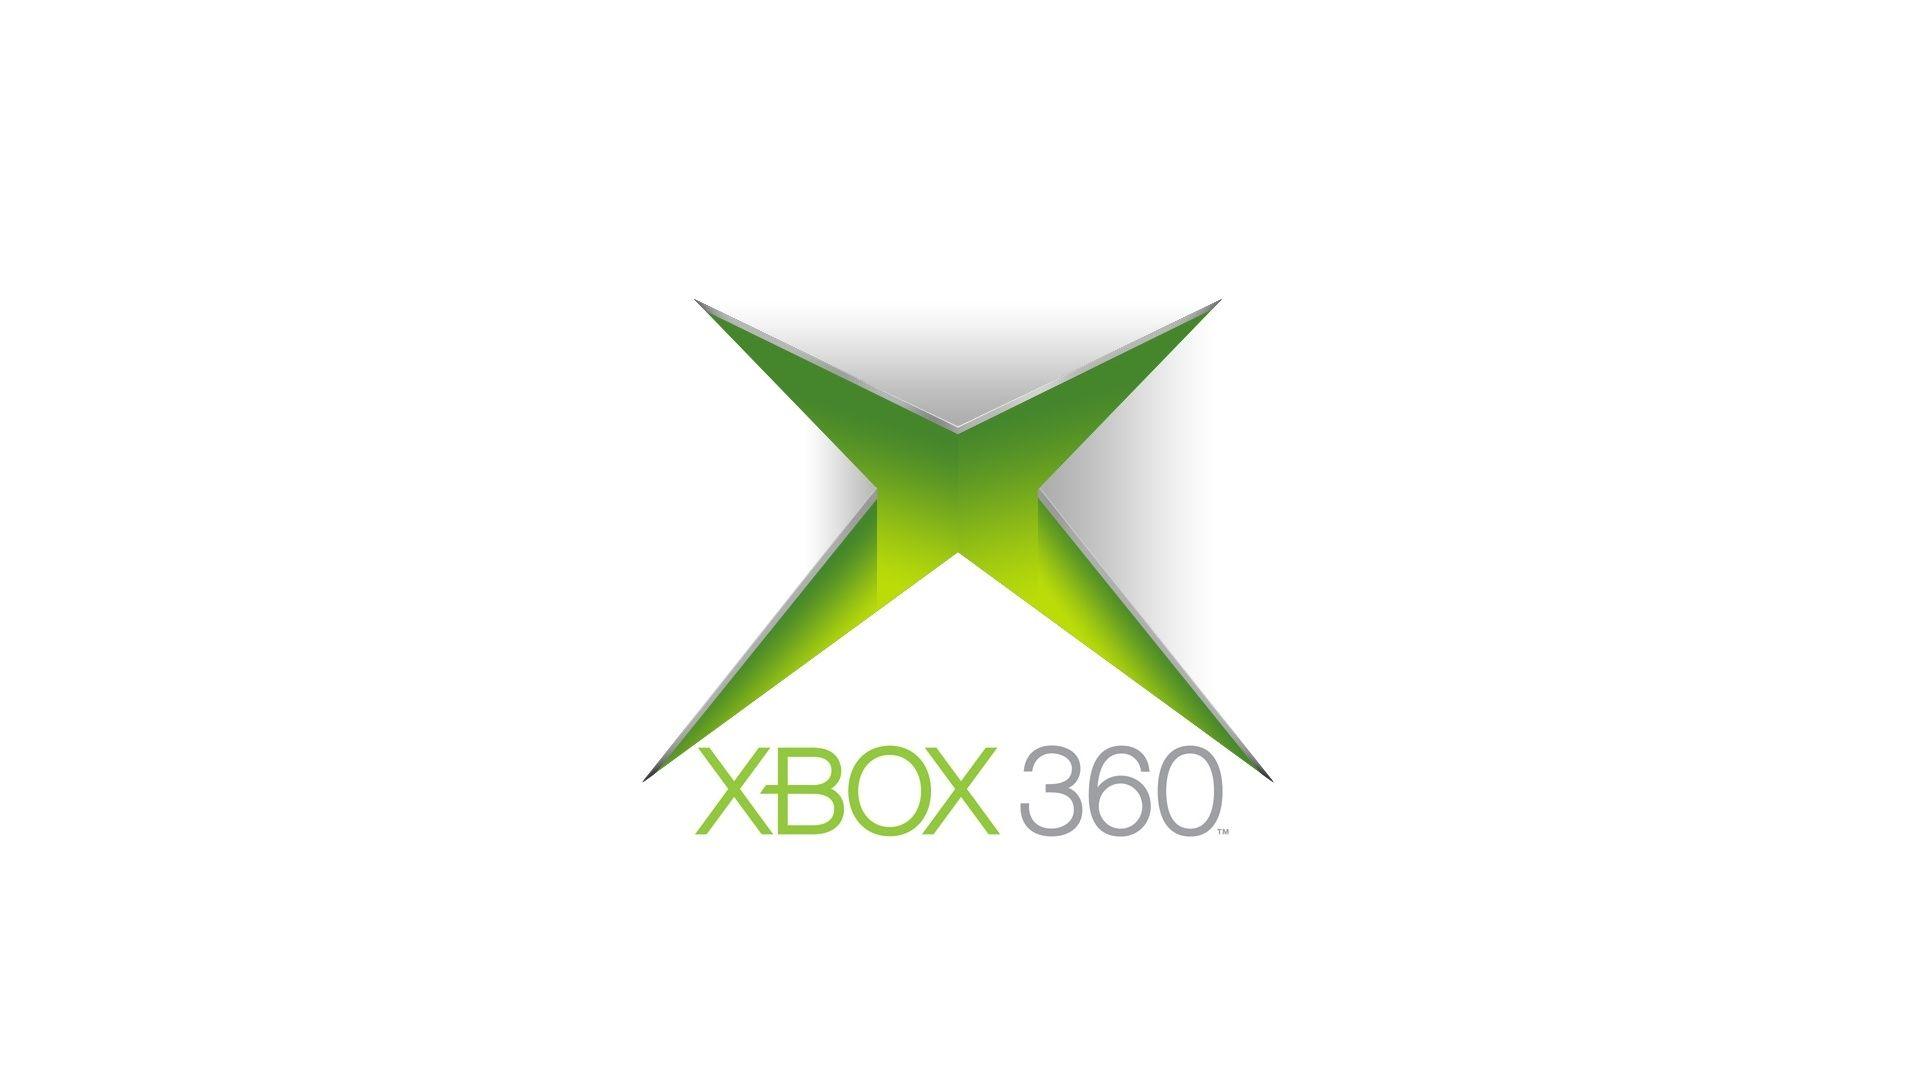 Xbox 360 logo symbol xbox background 1920x1080